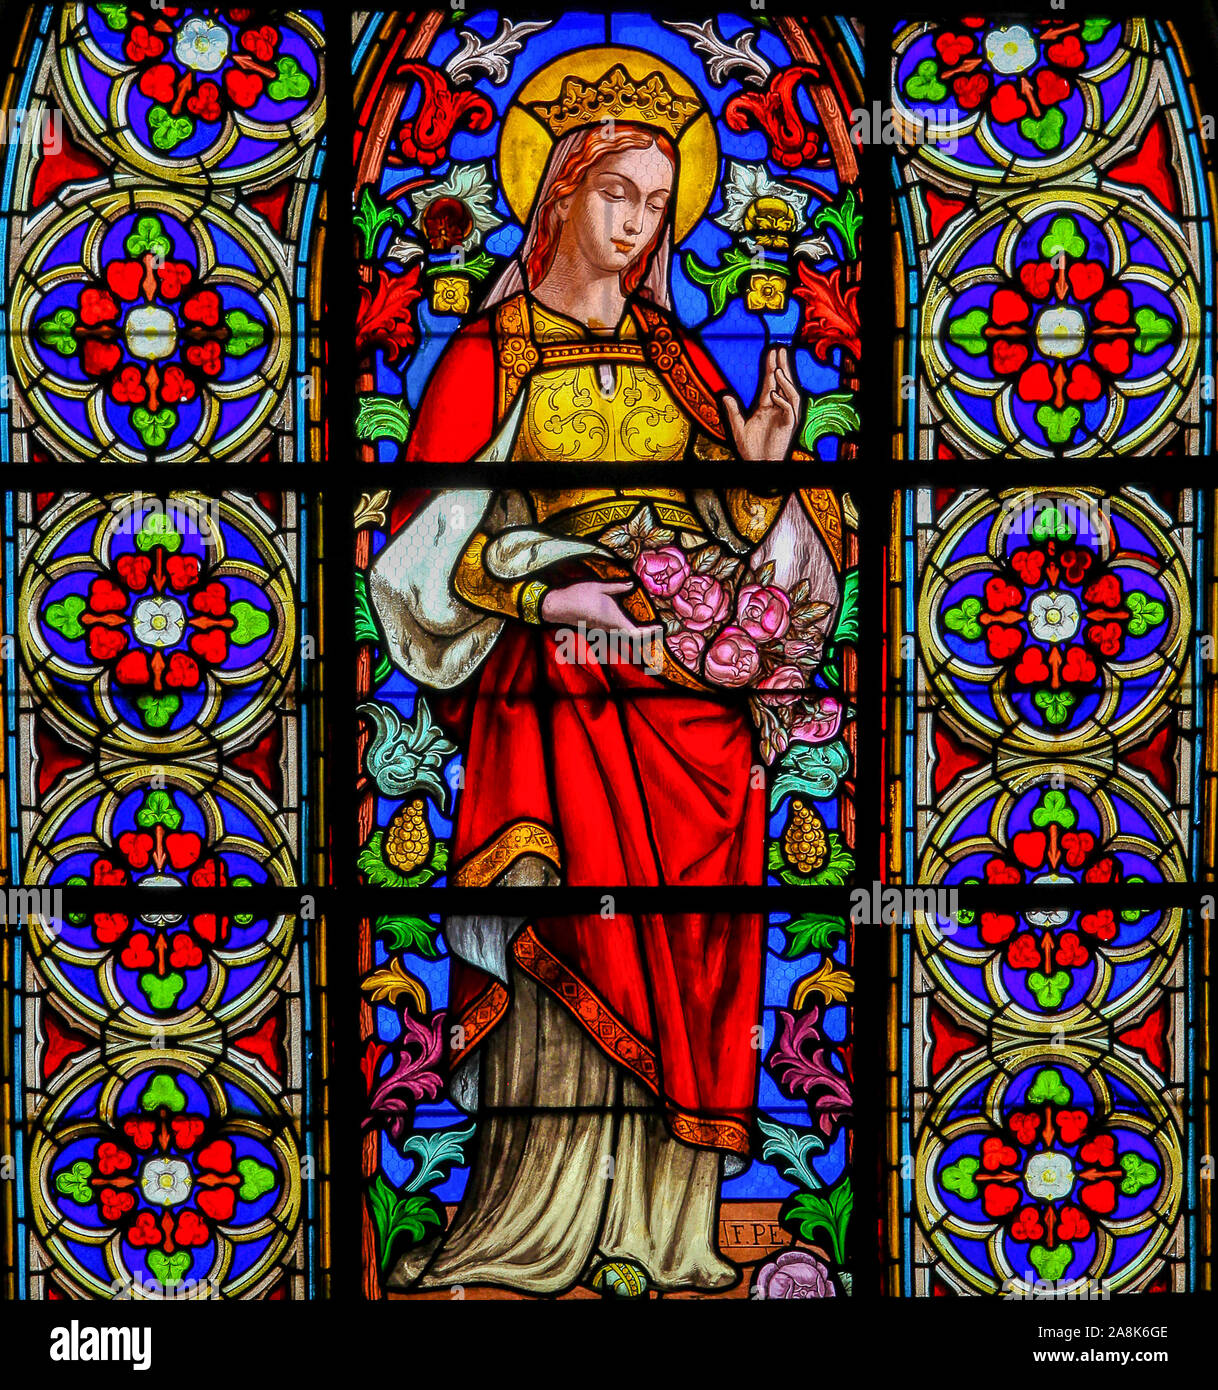 Glasmalereien in der Kirche von St. Martin in St Valery sur Somme, Frankreich, Darstellung der Heiligen Elisabeth Stockfoto